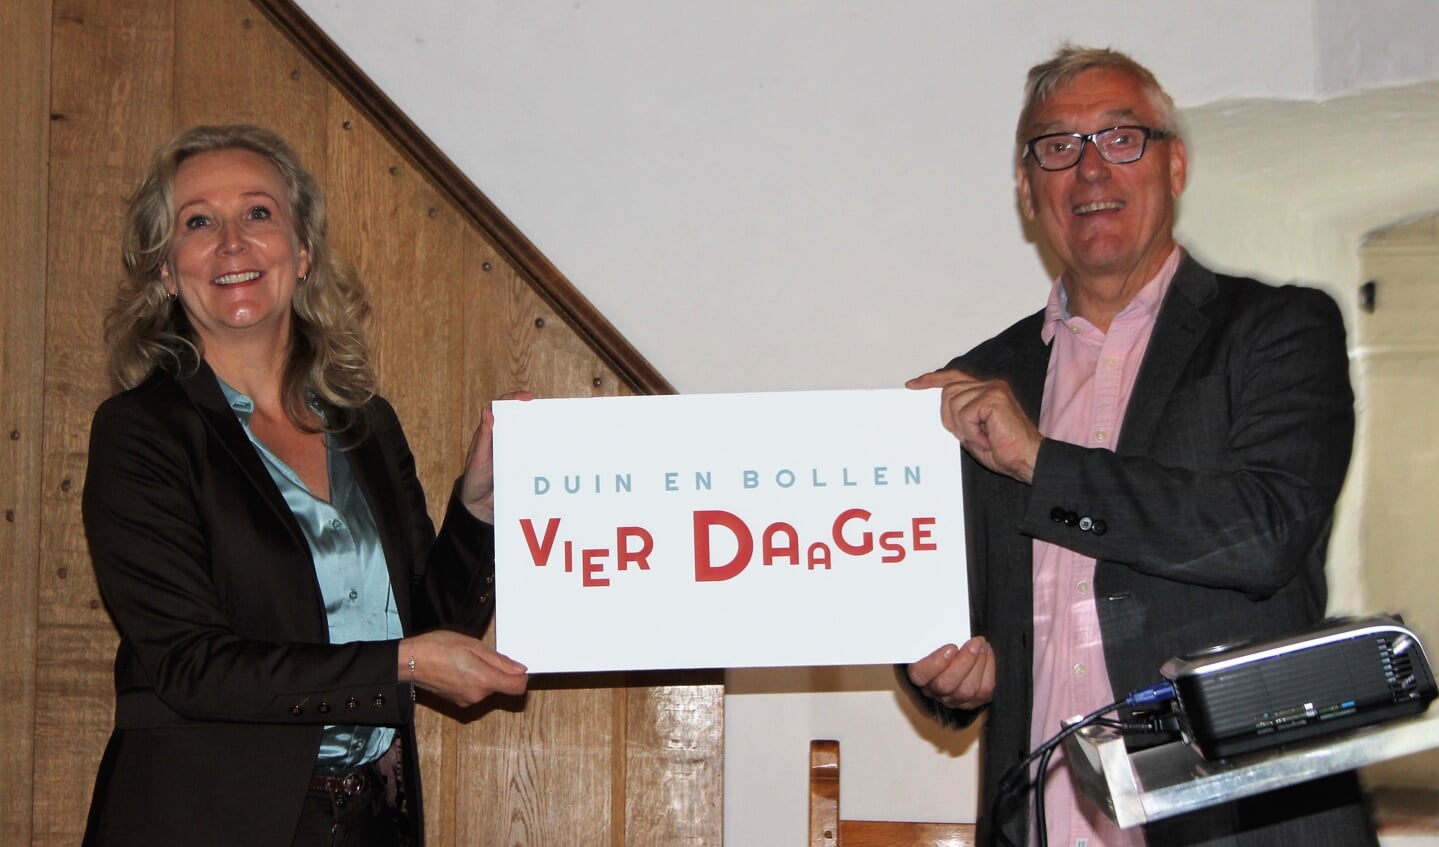 Quirine Kamphuisen geeft de uitvoering van de Duin en Bollen Vierdaagse in handen van Tjeerd Scheffer.